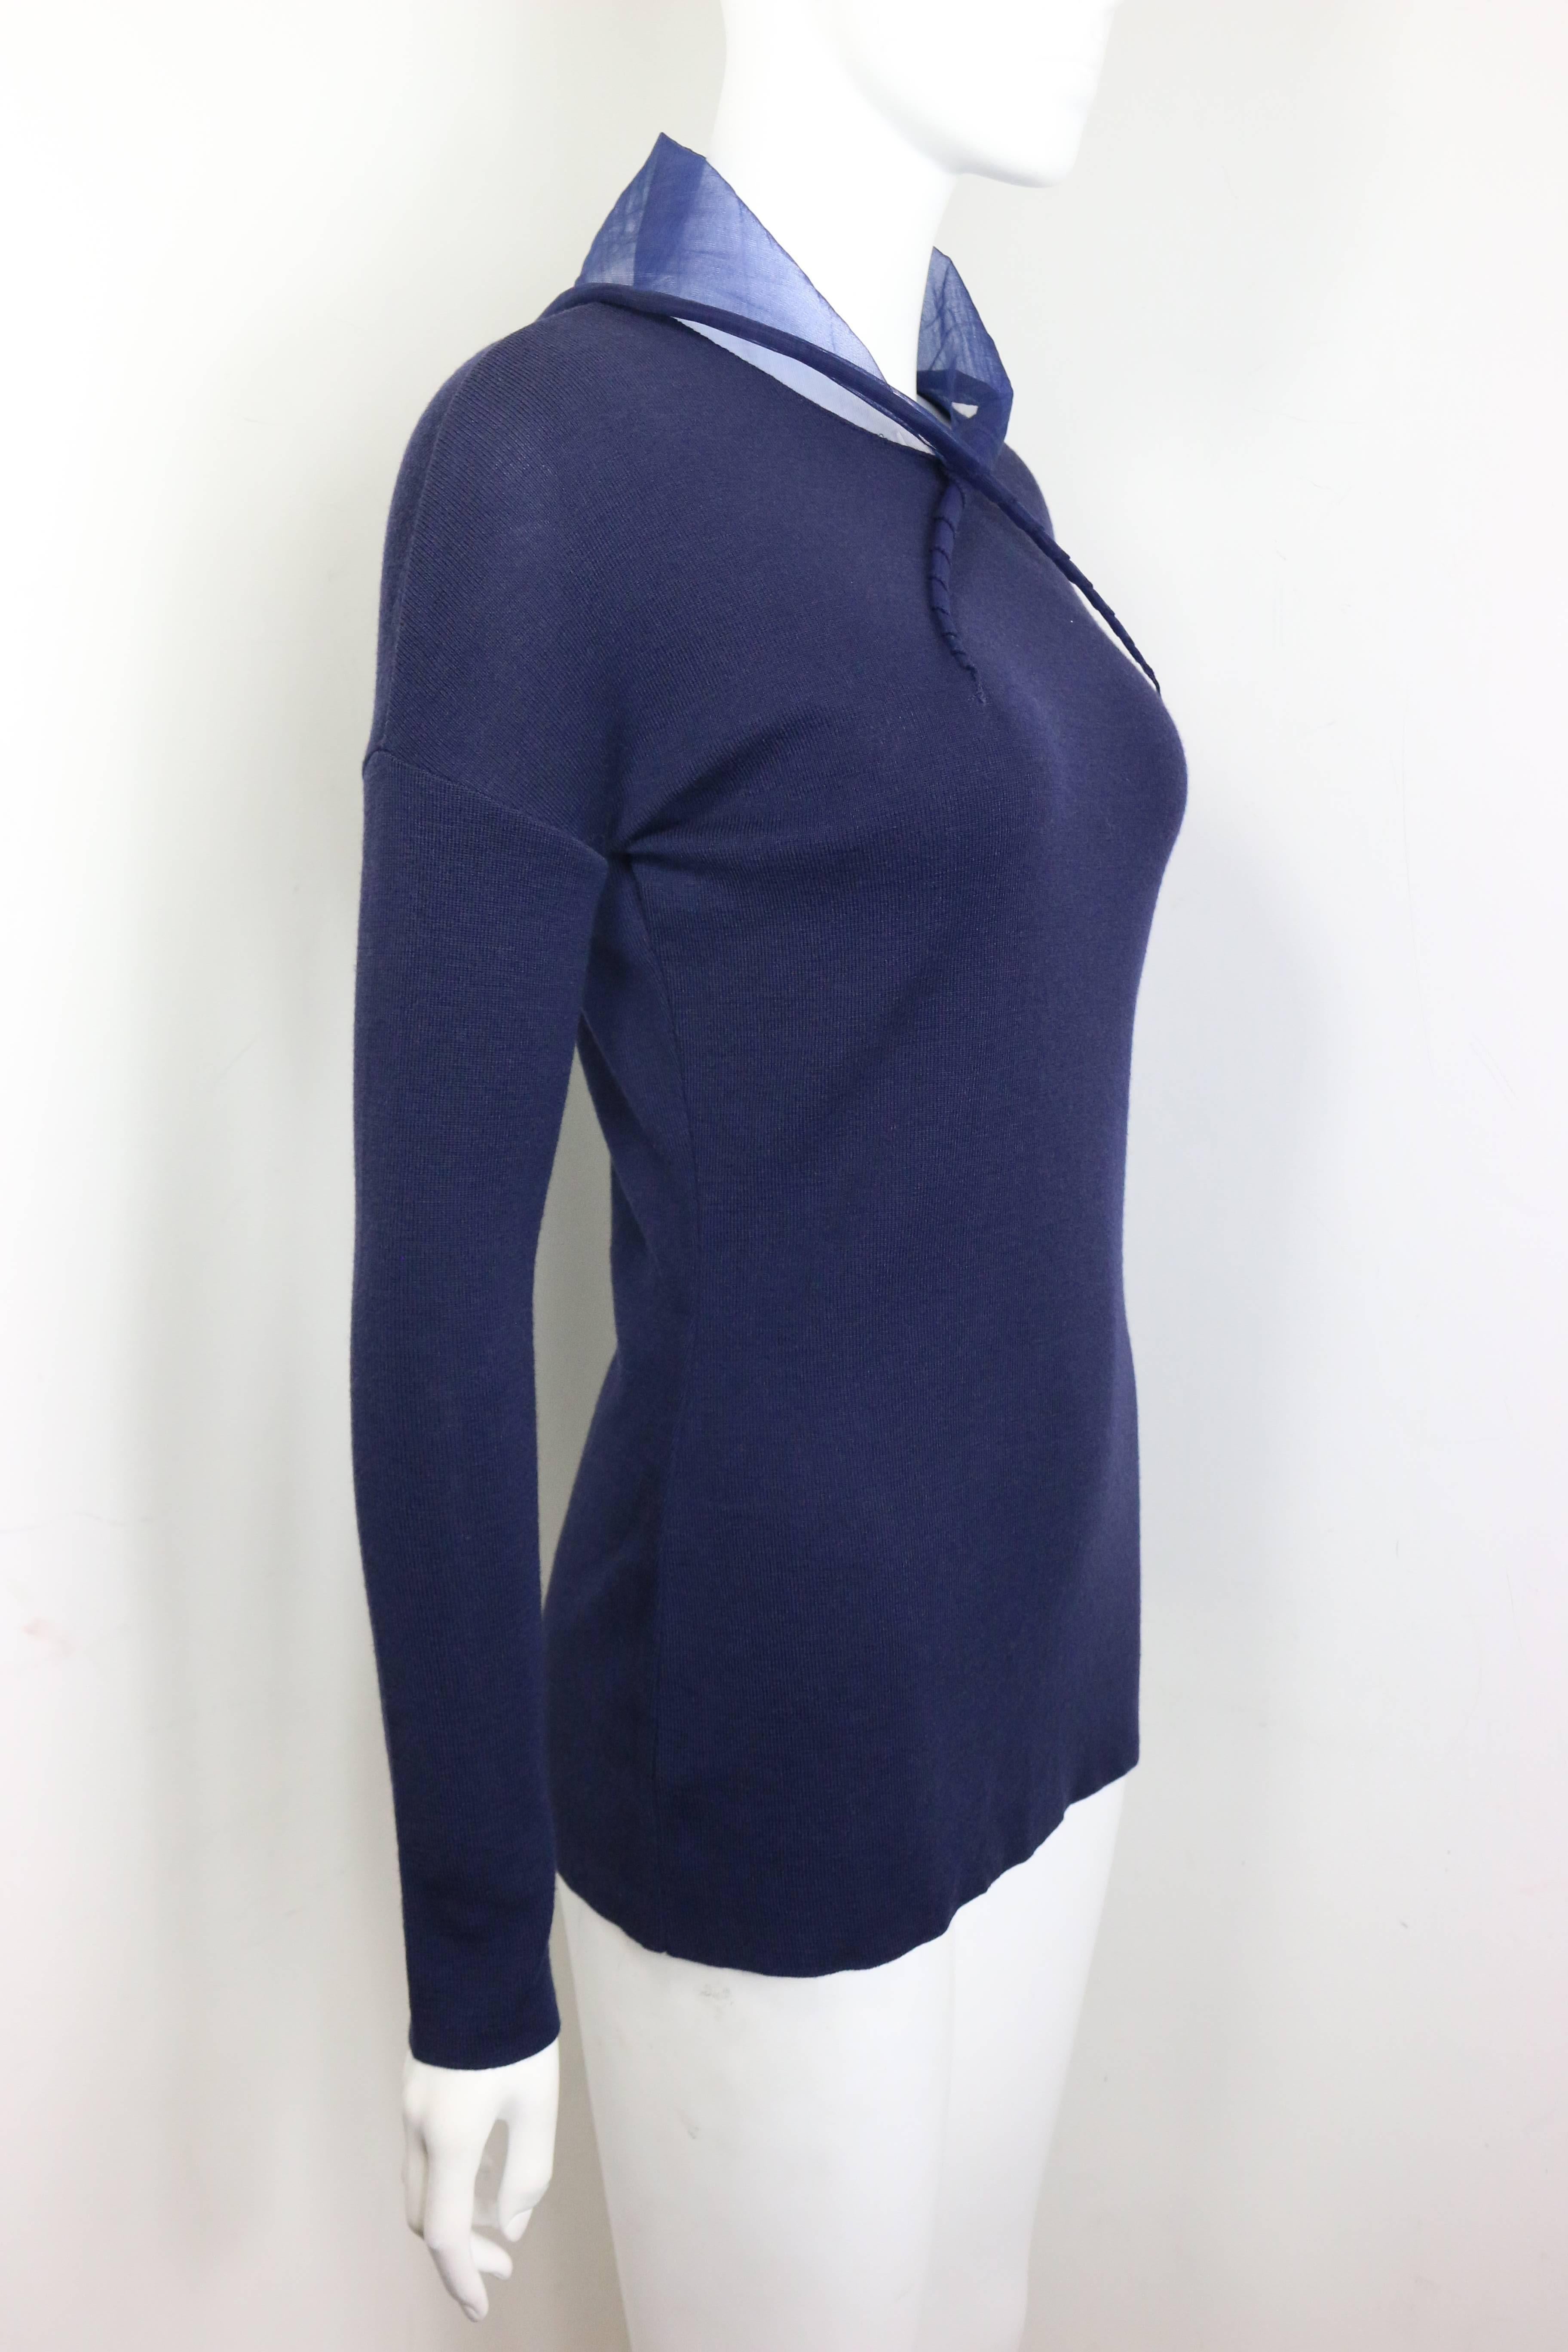 - Pull-over vintage 90s Liviana Conti en laine bleu marine avec capuche transparente. 

- Fabriqué en Italie. 

- Taille 42. 

- 100% laine. 
